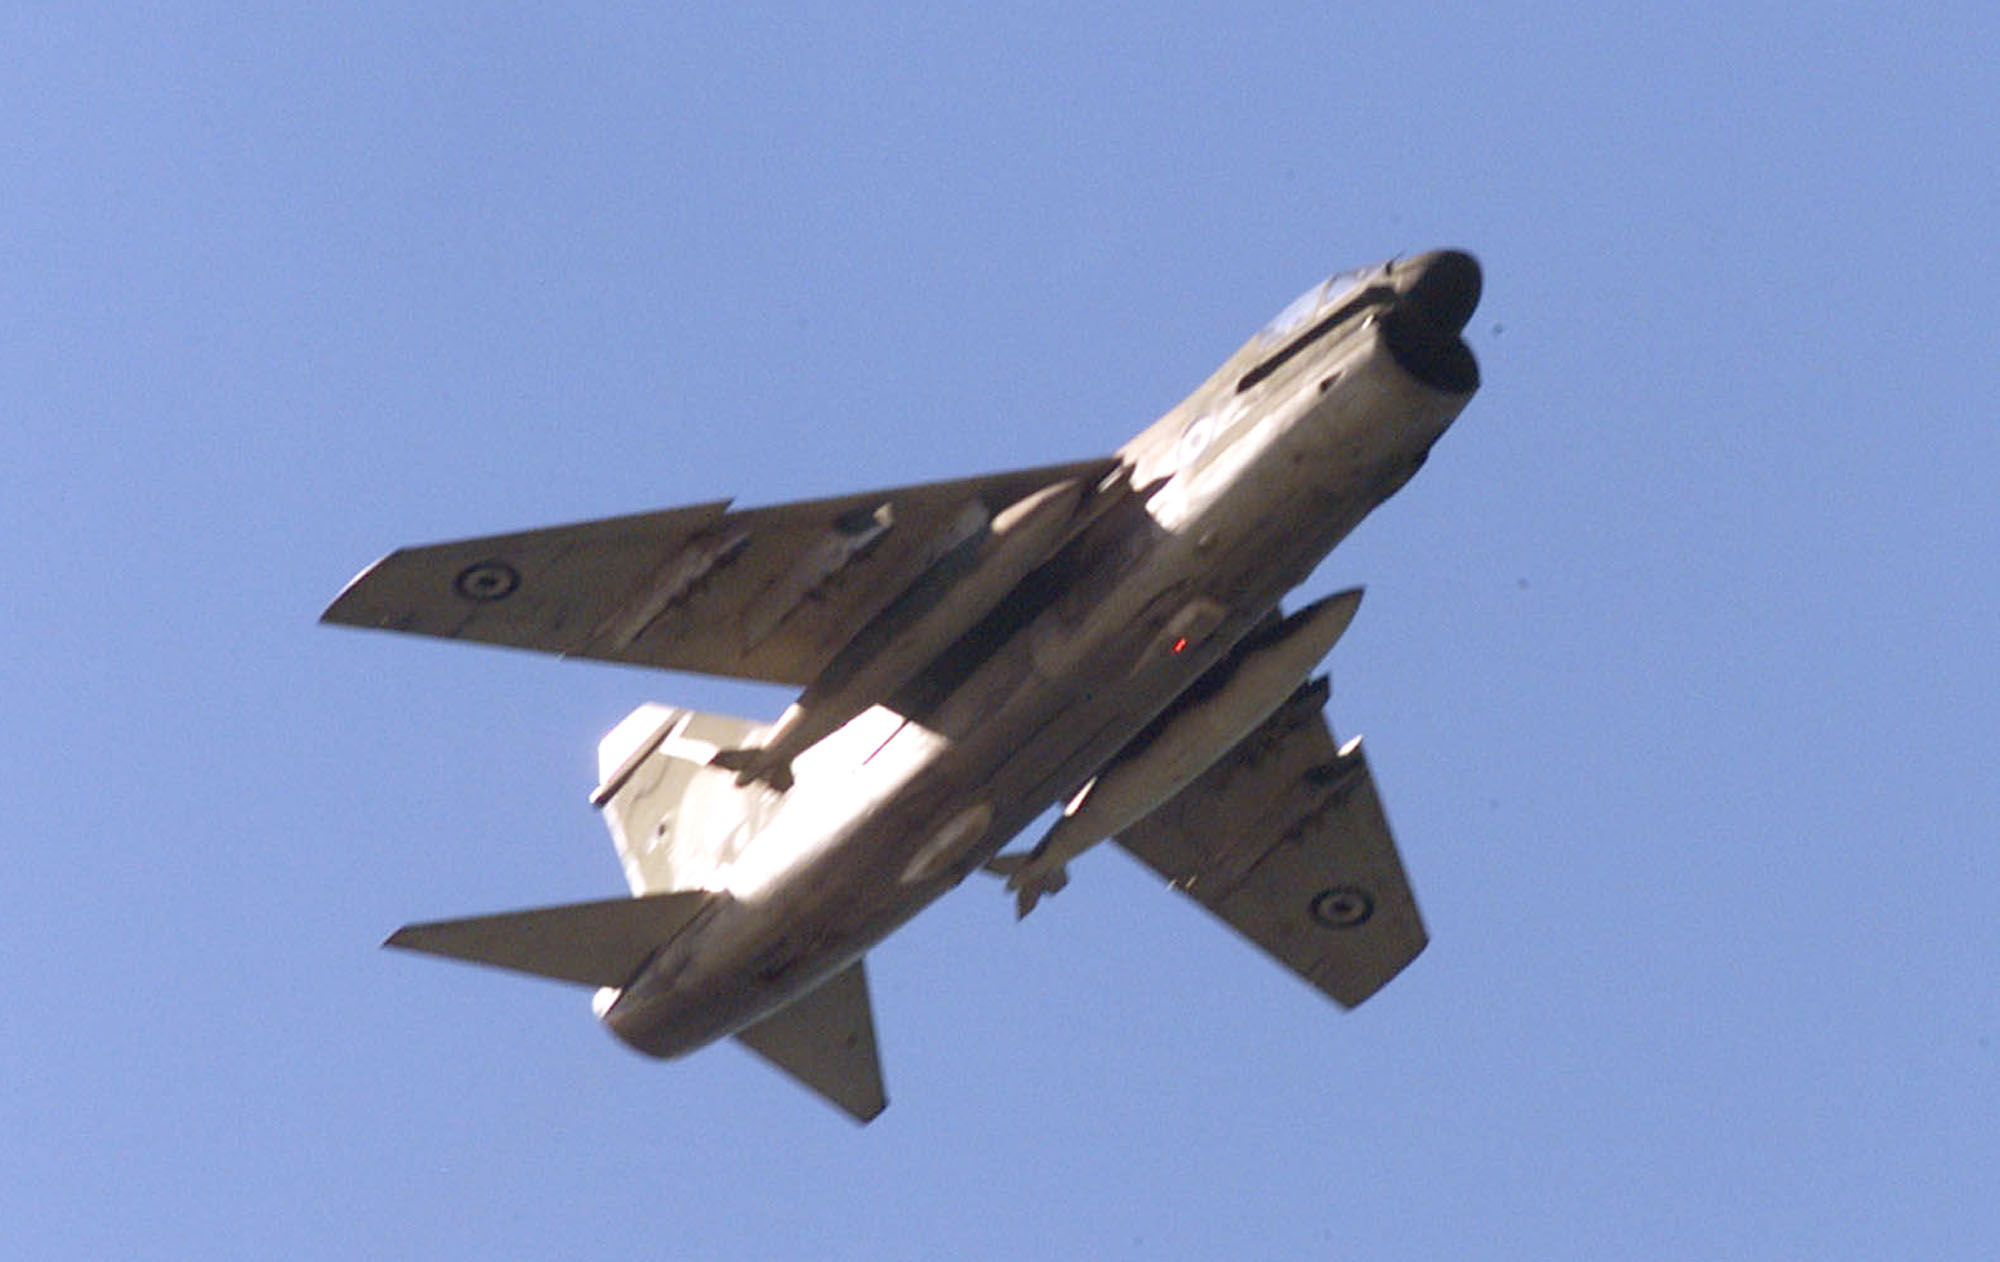 Eπεσε βομβαρδιστικό Α-7 Corsair στην περιοχή μεταξύ Ροδόπης-Eβρου